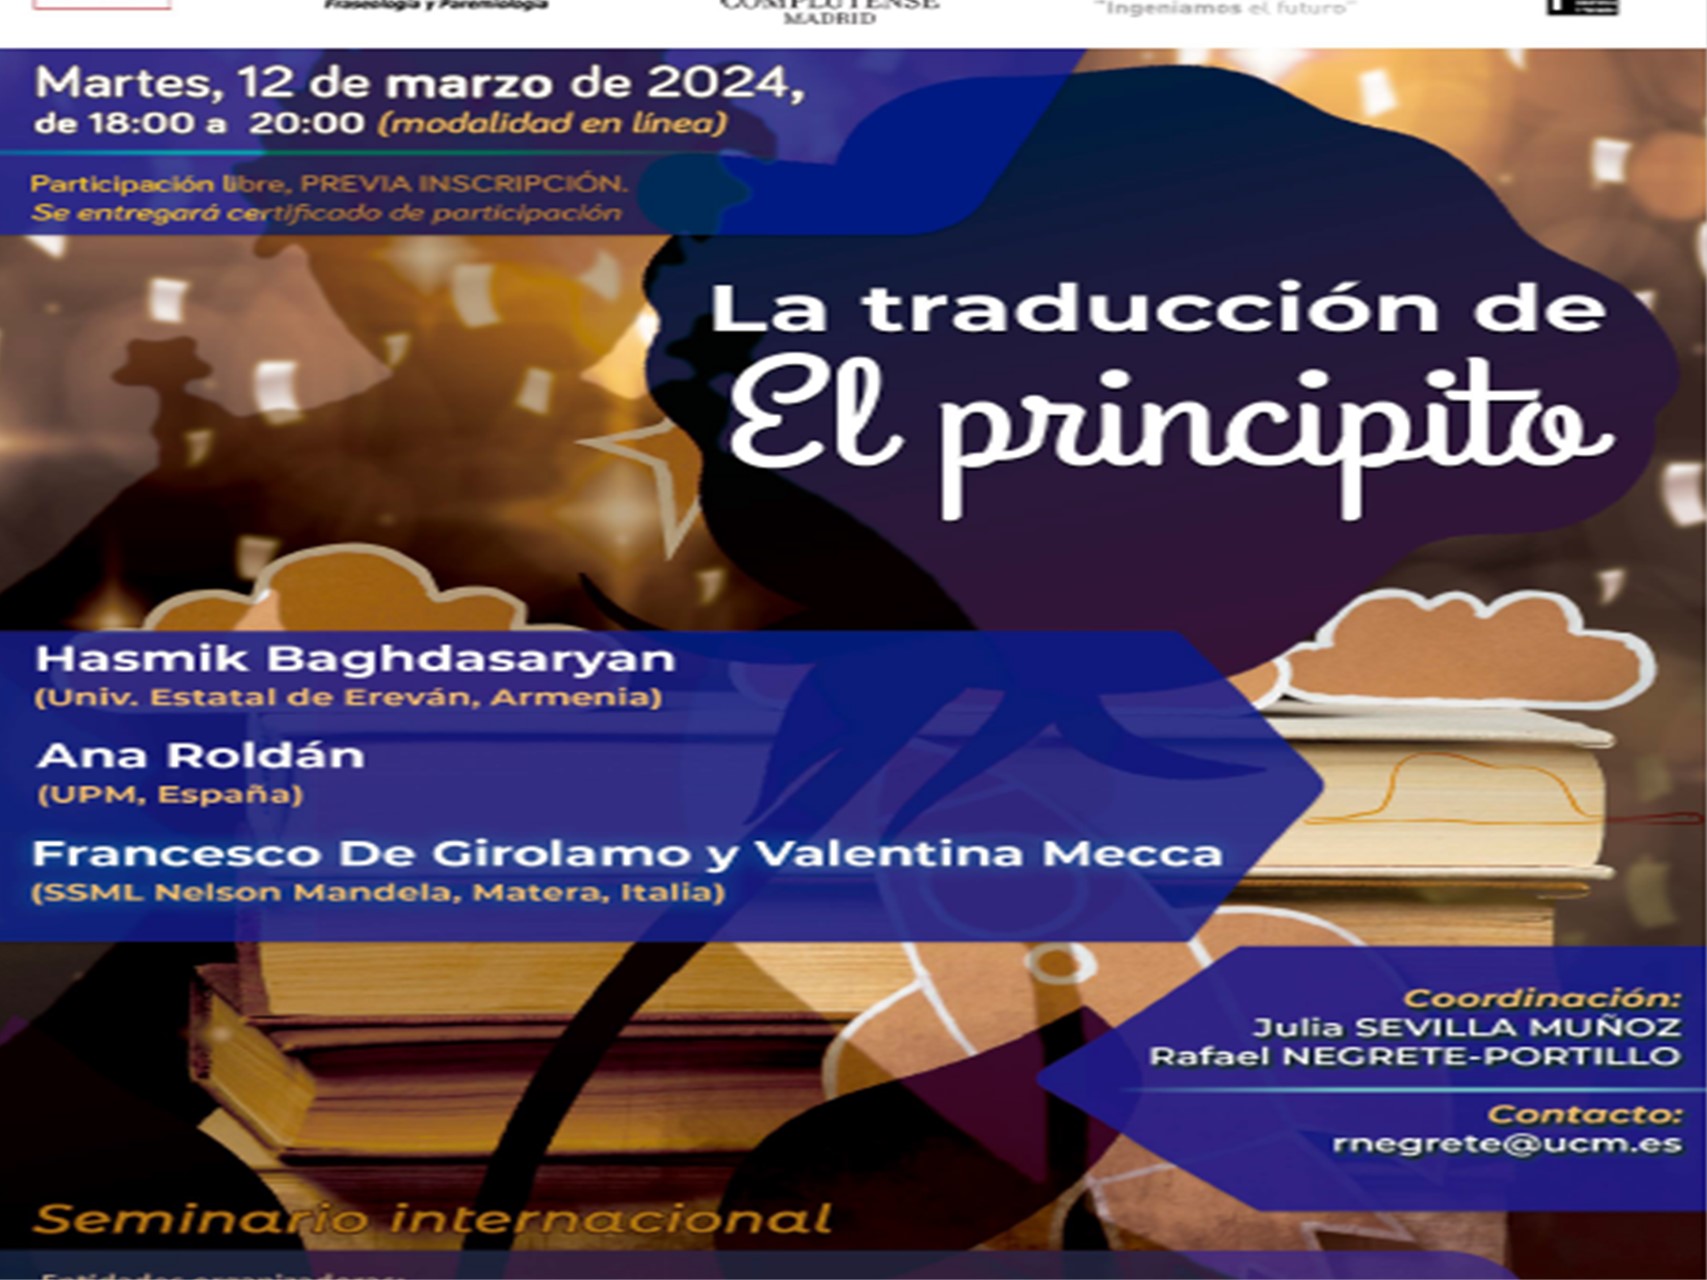 Seminario : La traducción de El principito, 12 de marzo de 2024 de 18:00 a 20:00  (en línea),  organizado por el Dpto. ERFIT